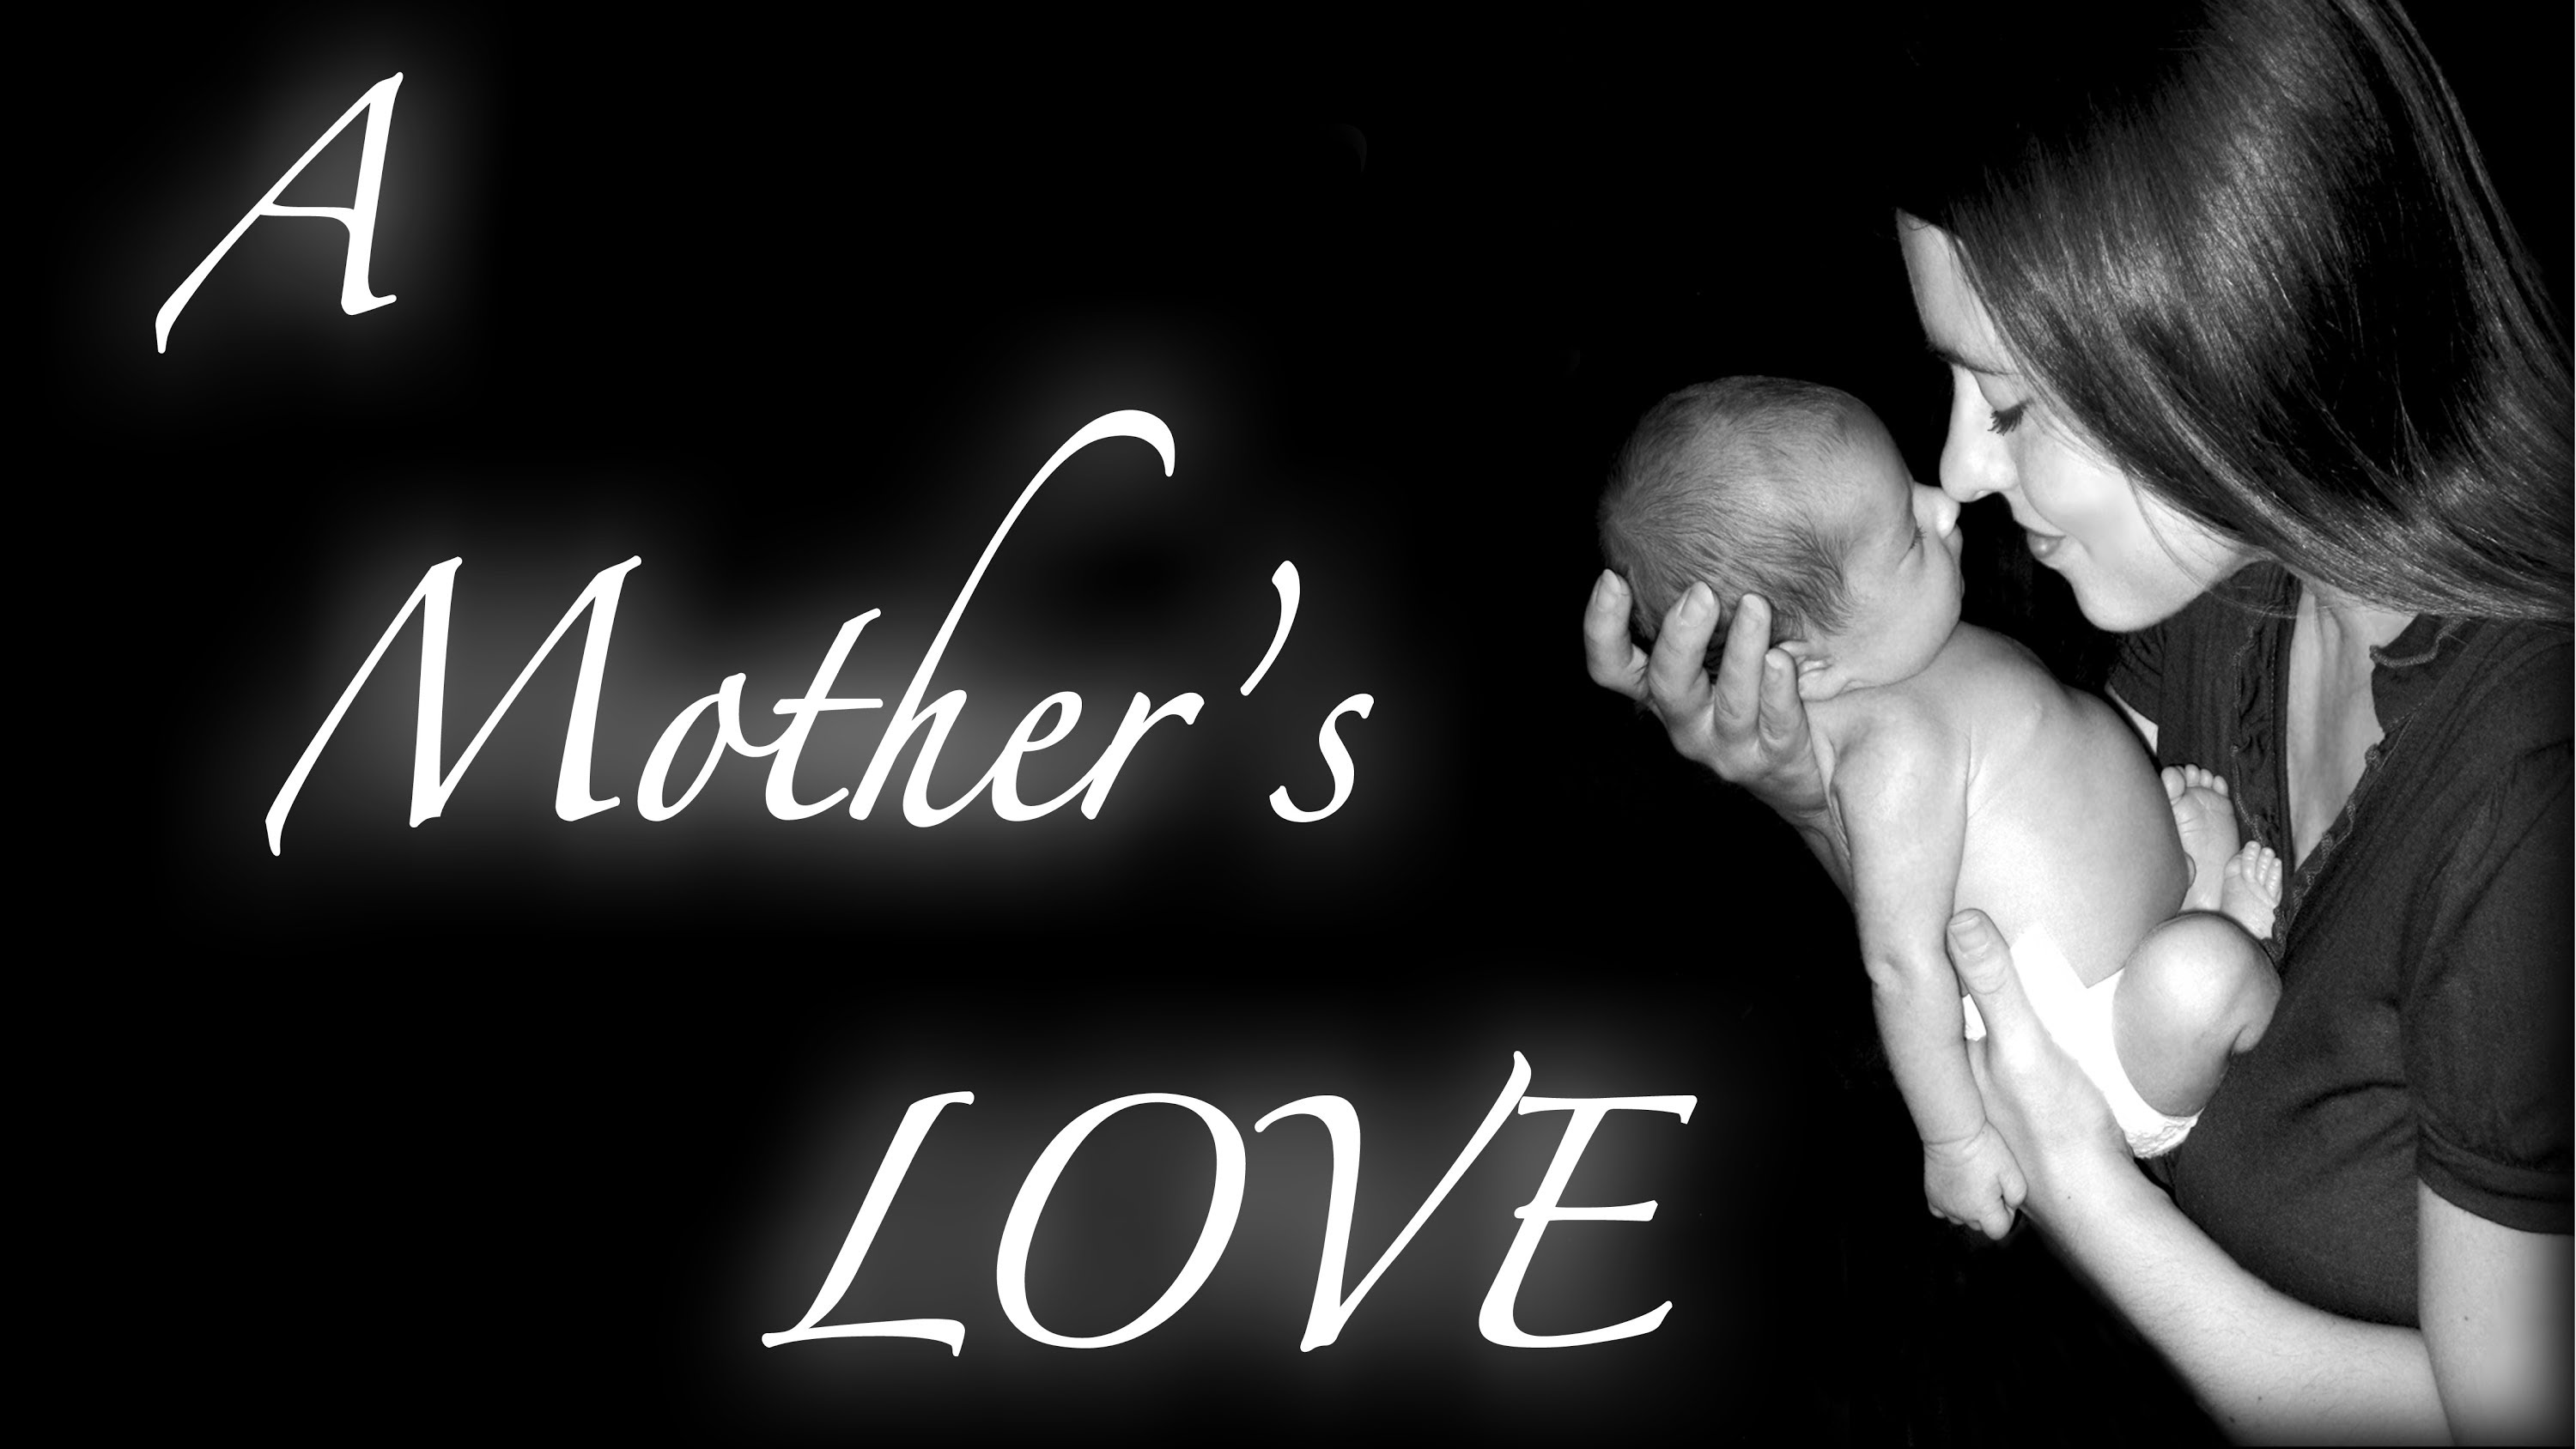 Mom loves mom videos. День матери. День матери фон. Mother Love. Mother's Day Song Gena Hill.